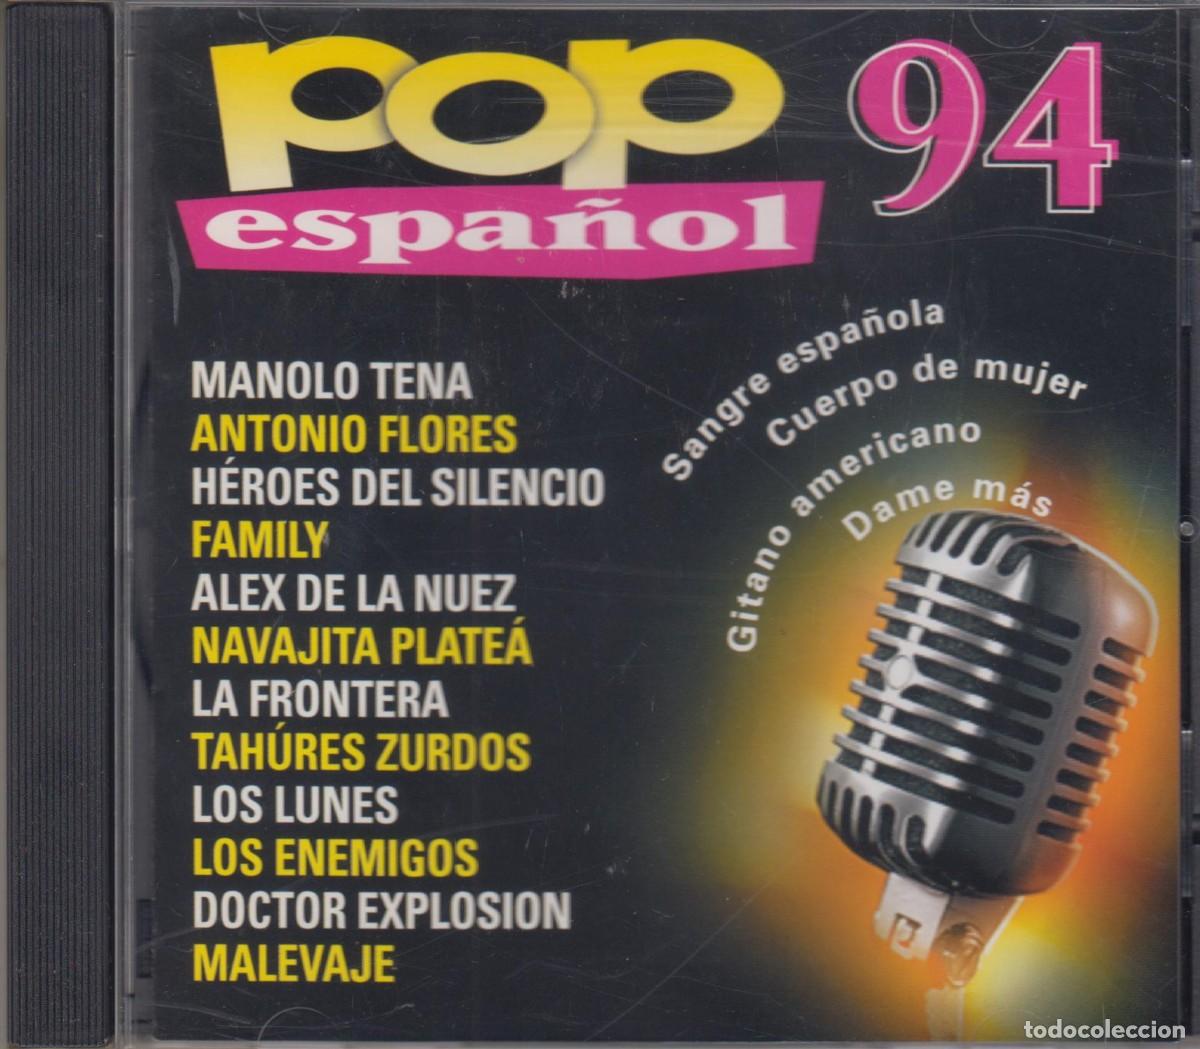 pop español 94 cd héroes del silencio manolo te - Compra venta en